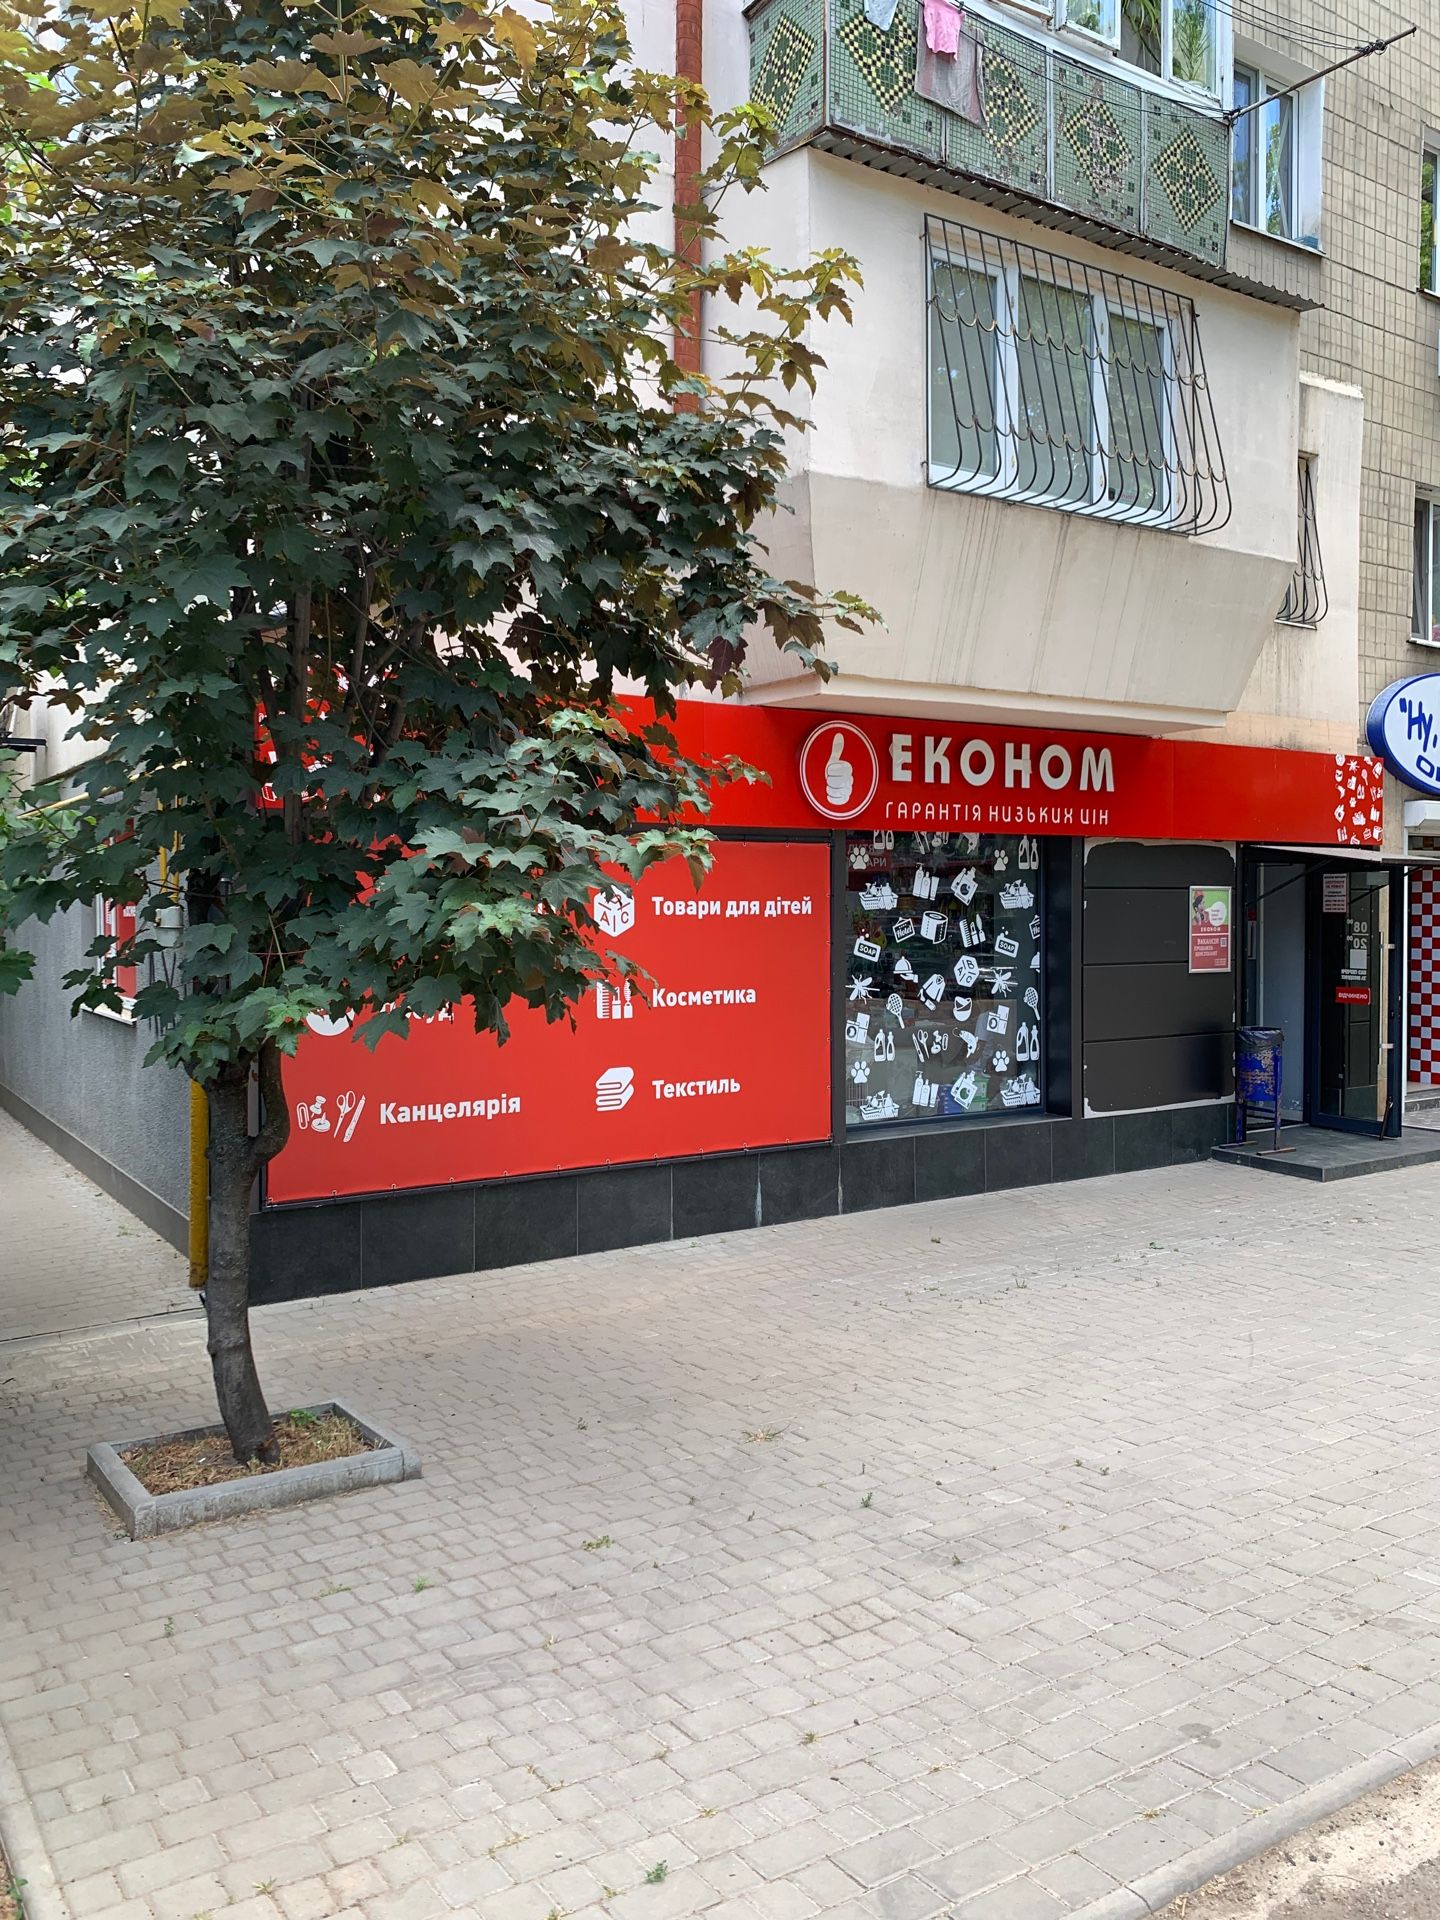 Аренда помещения магазина в Малиновском районе Одессы, Филатова. 85 м.